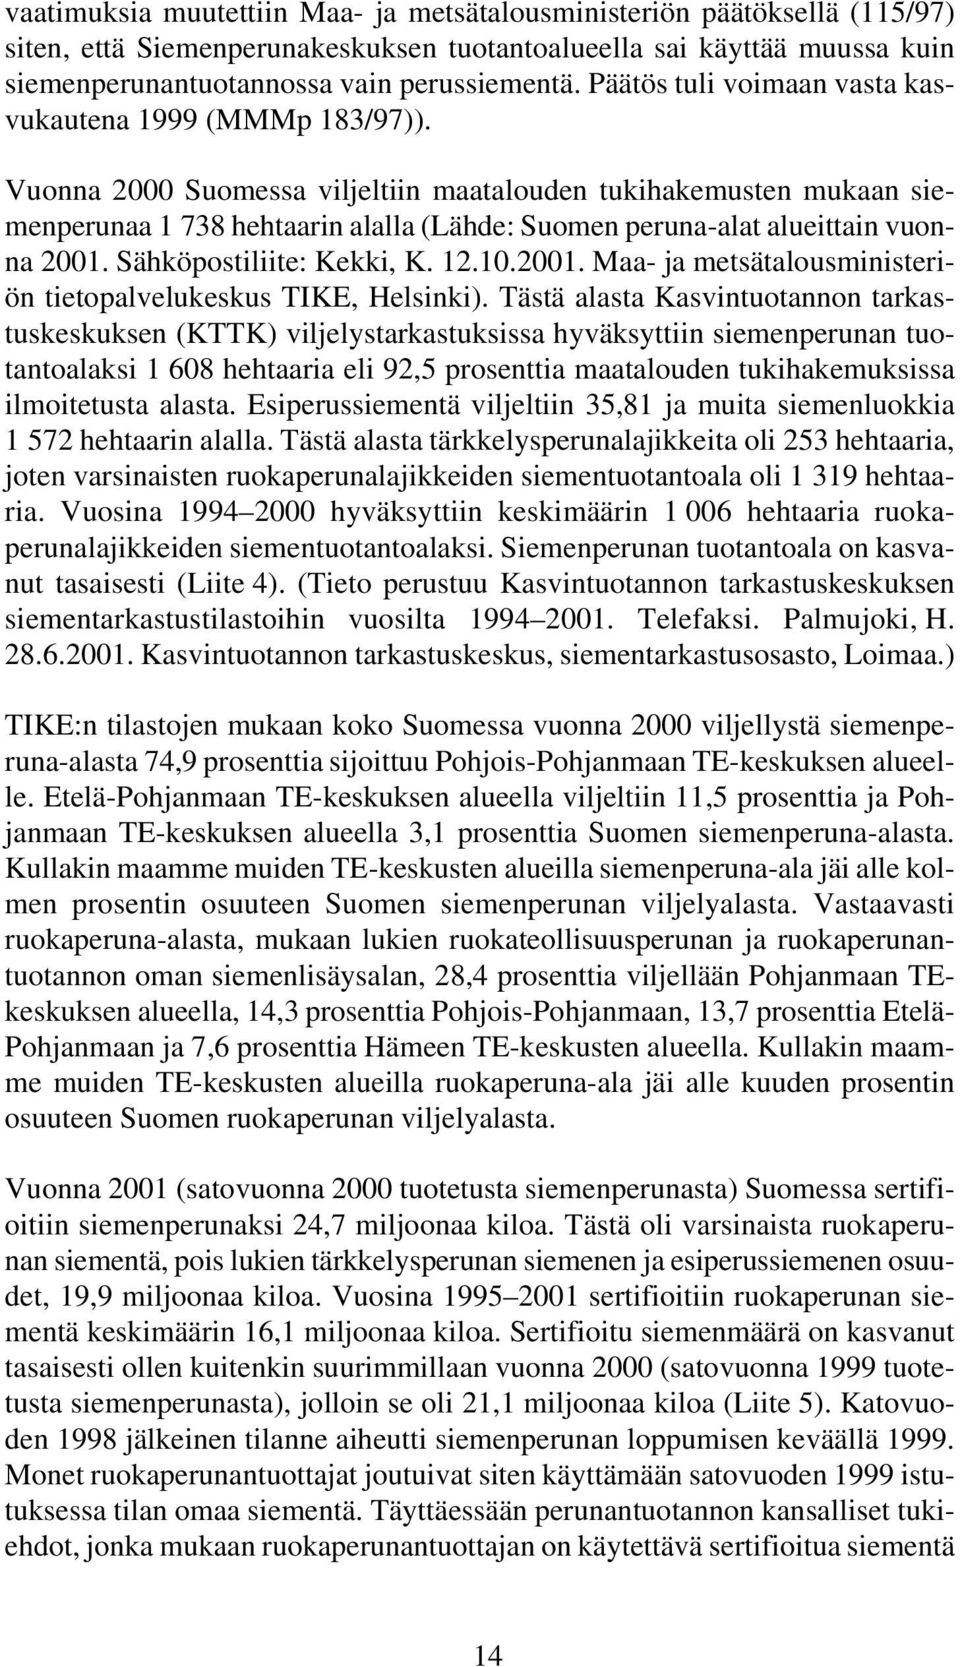 Vuonna 2000 Suomessa viljeltiin maatalouden tukihakemusten mukaan siemenperunaa 1 738 hehtaarin alalla (Lähde: Suomen peruna-alat alueittain vuonna 2001.